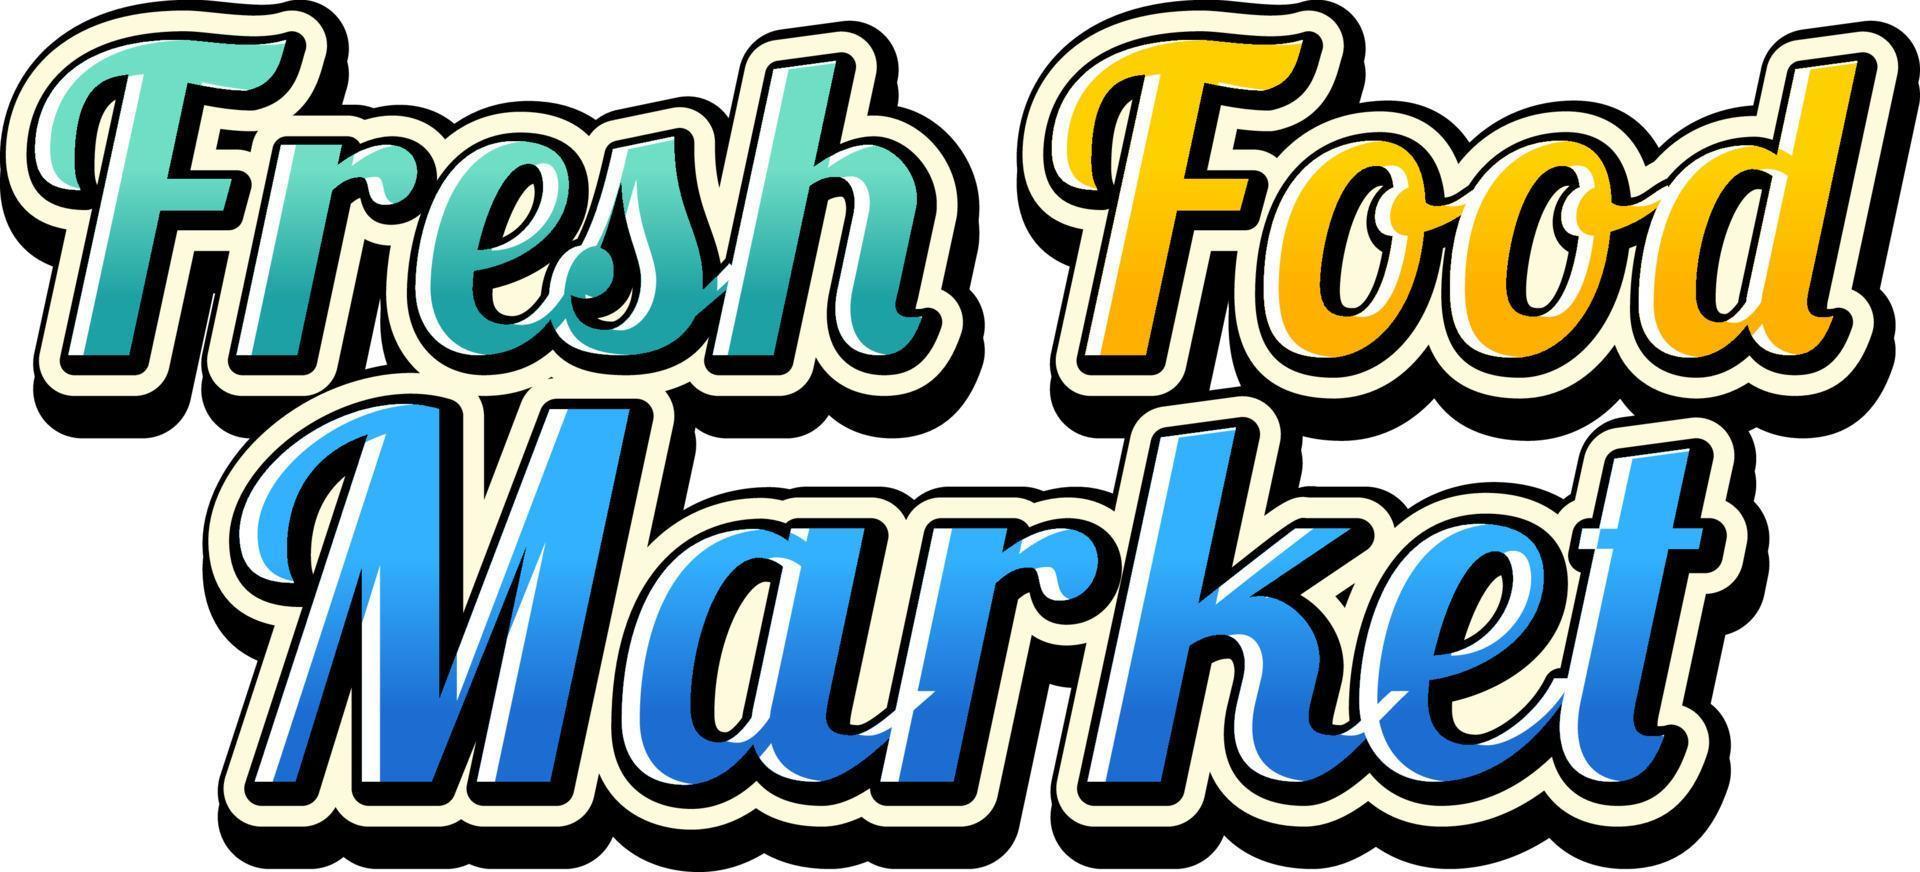 Fresh Food Market typography design vector